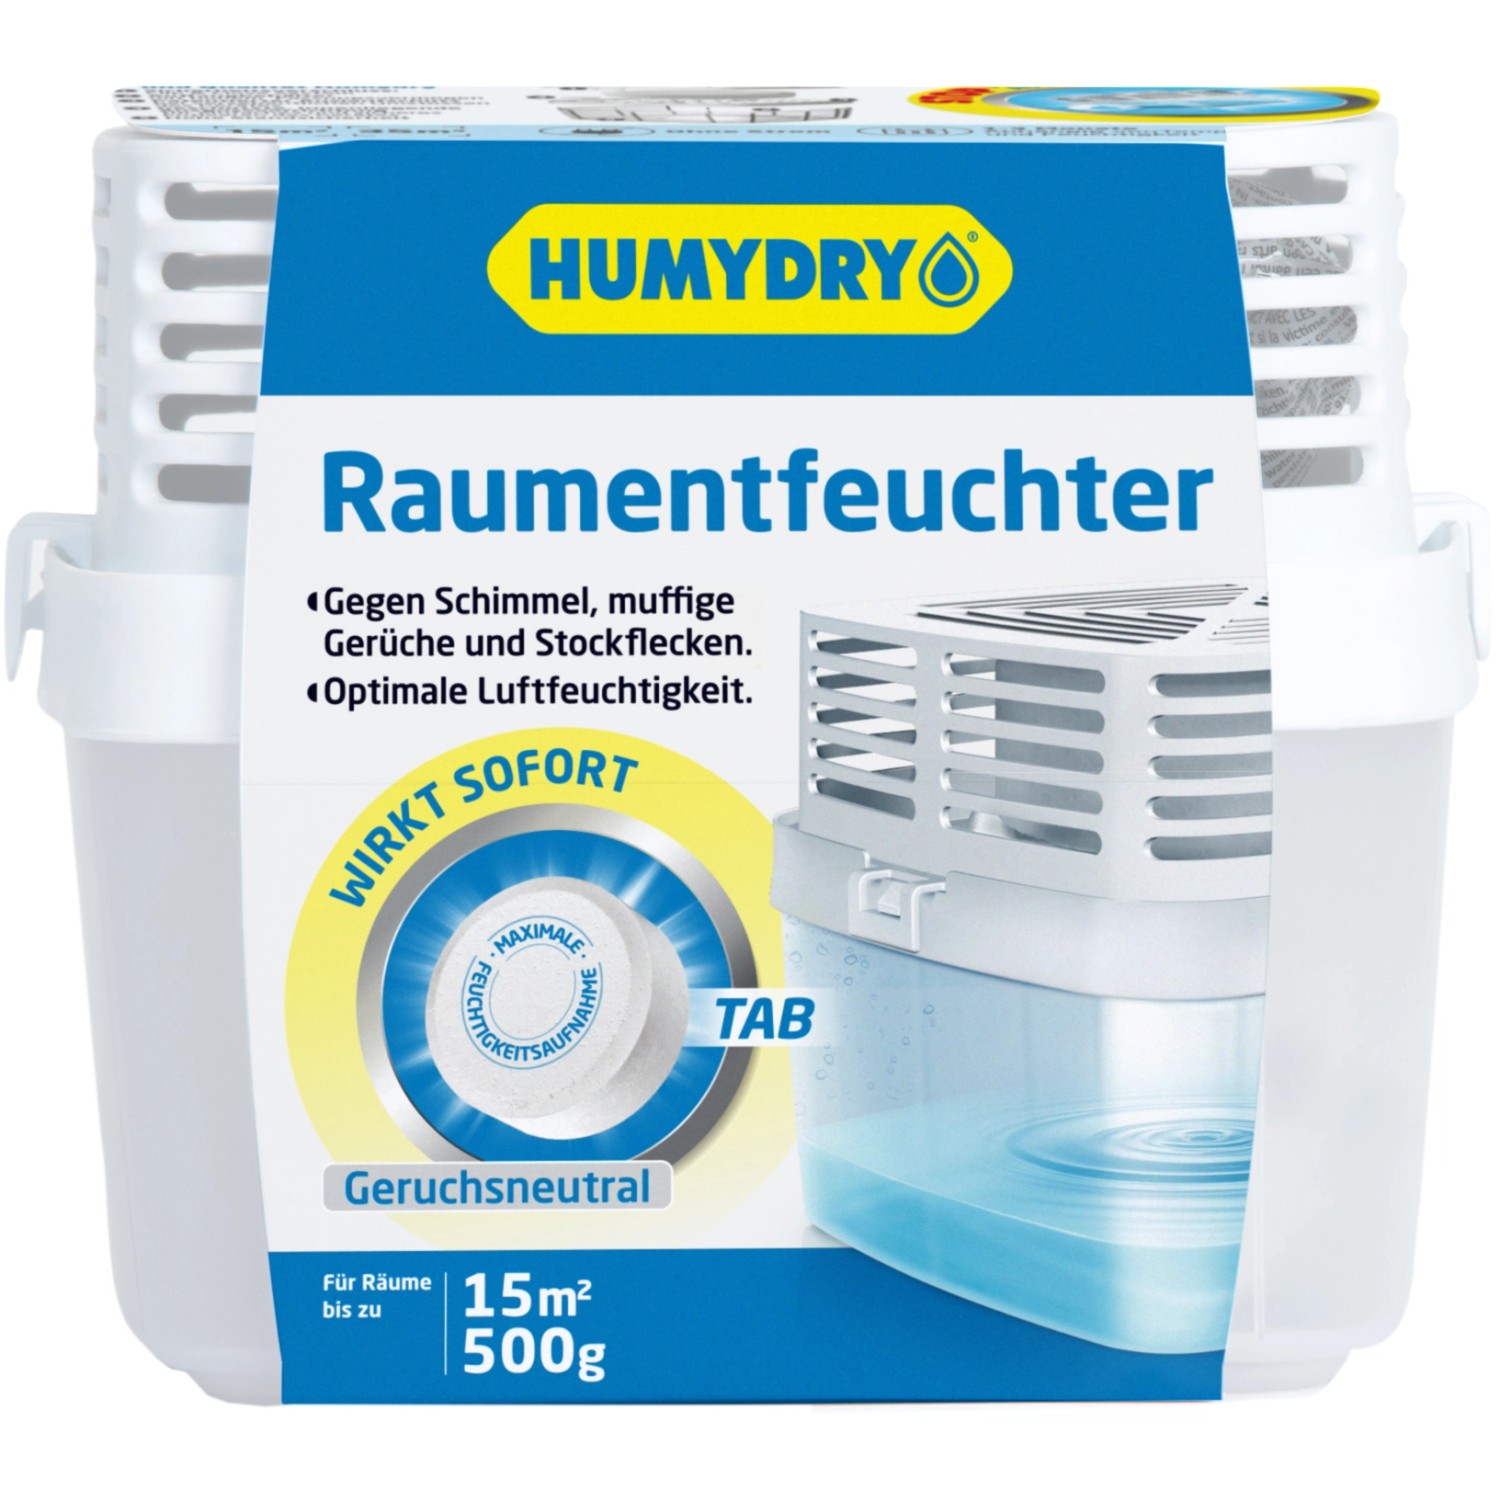 Humidry Premium 500 Raumentfeuchter Neutral mit Nachfülltab 1 x 500 g von HUMYDRY